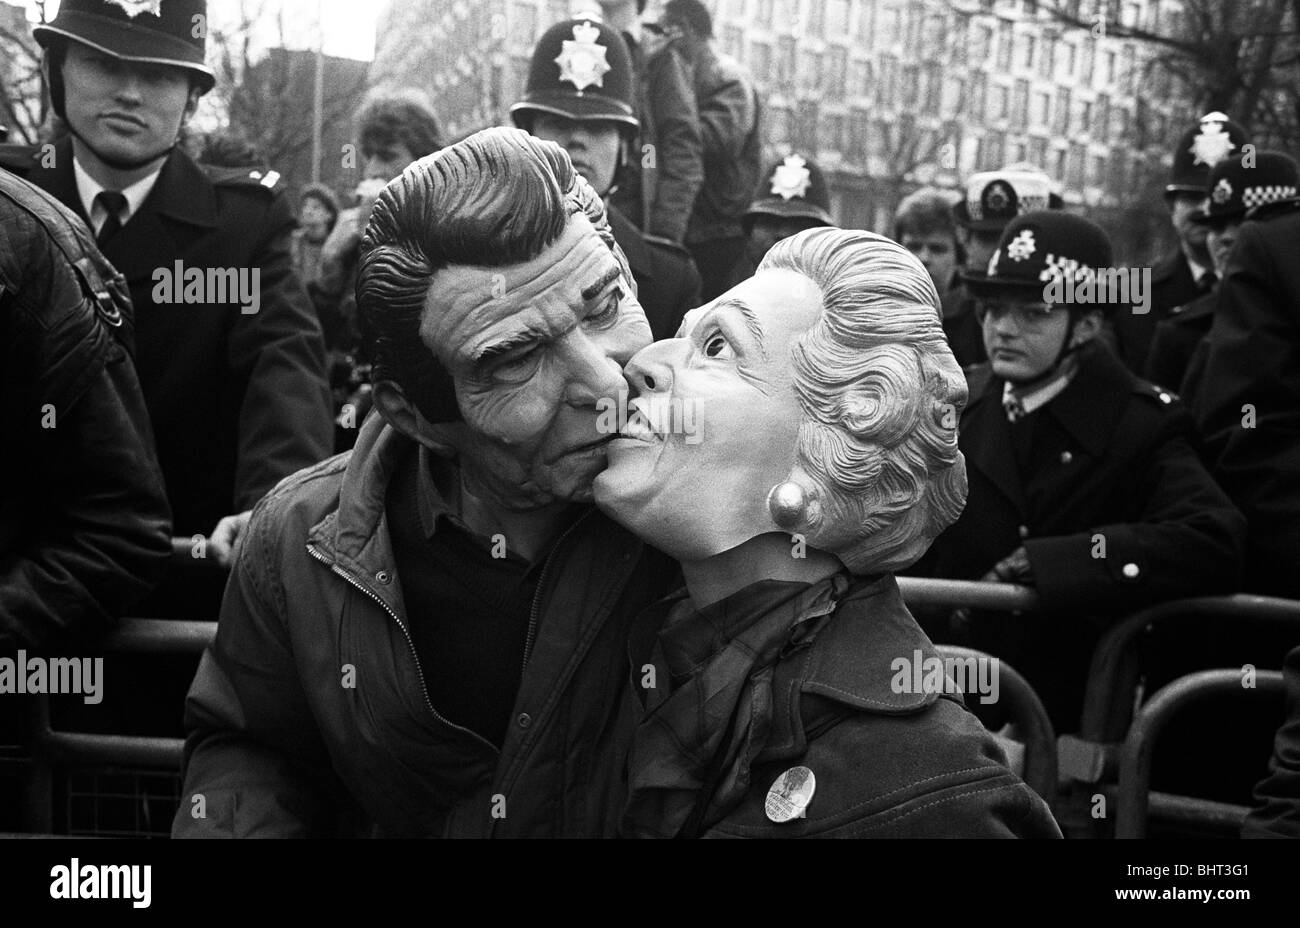 Les manifestants masqués se présentant comme des dirigeants occidentaux Ronald Reagan et Margaret Thatcher kiss lors d'une démonstration de la CND. Banque D'Images